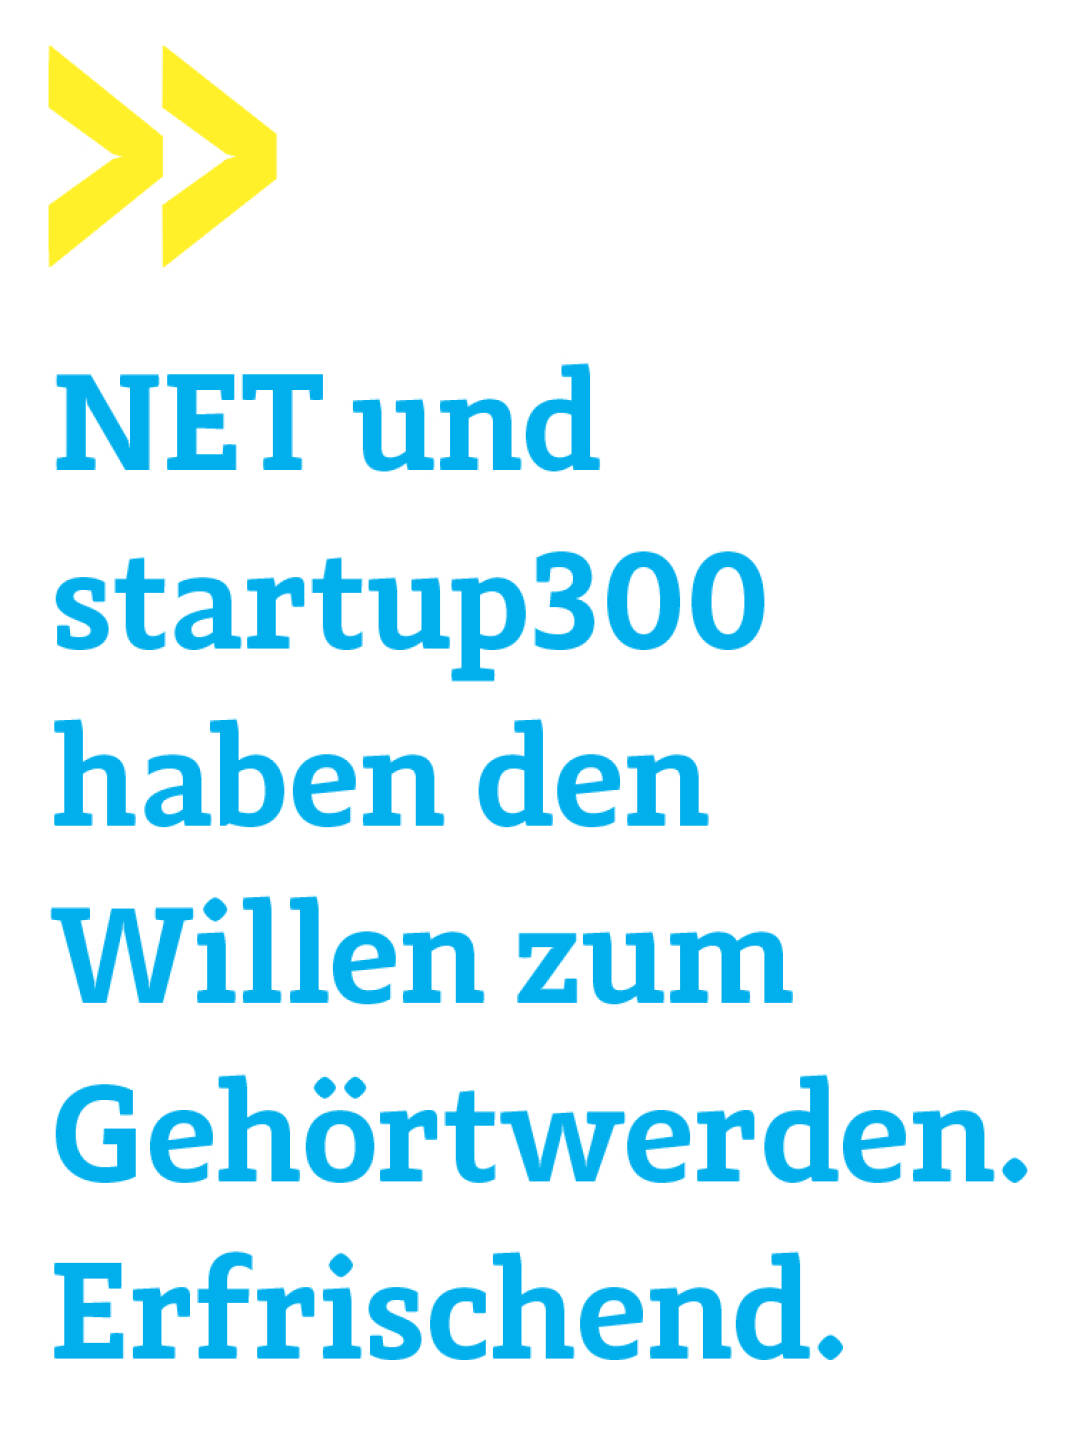 NET und startup300 haben den Willen zum Gehörtwerden. Erfrischend. 
Wolfgang Matejka, Wiener Privatbank